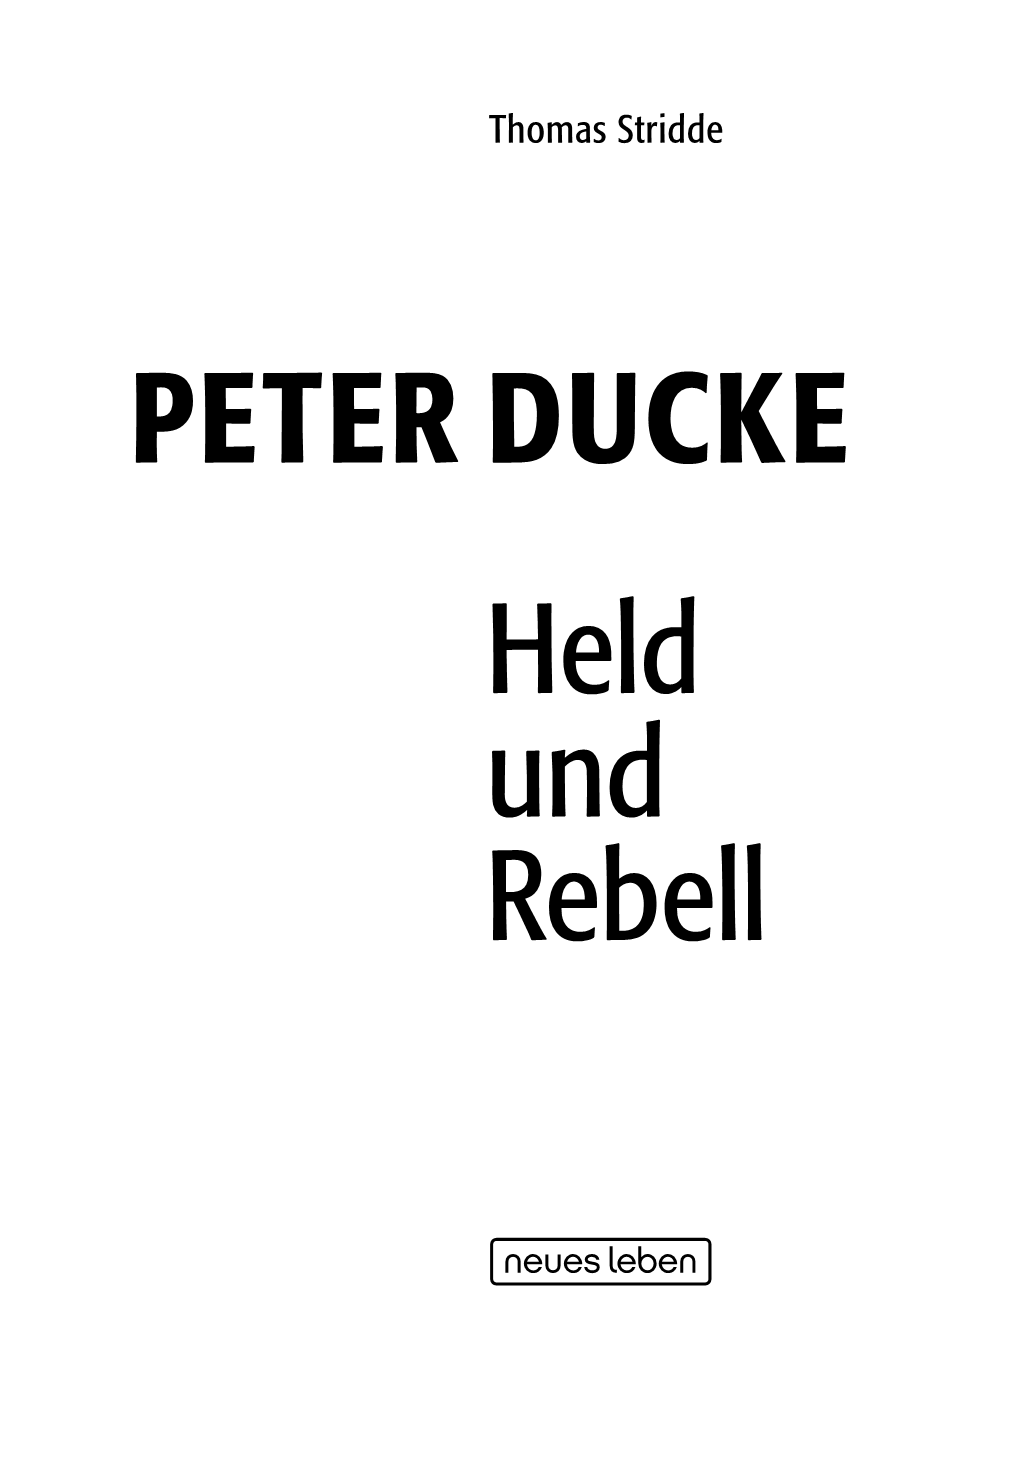 PETER DUCKE Held Und Rebell Sämtliche Inhalte Dieser Leseprobe Sind Urheberrechtlich Geschützt